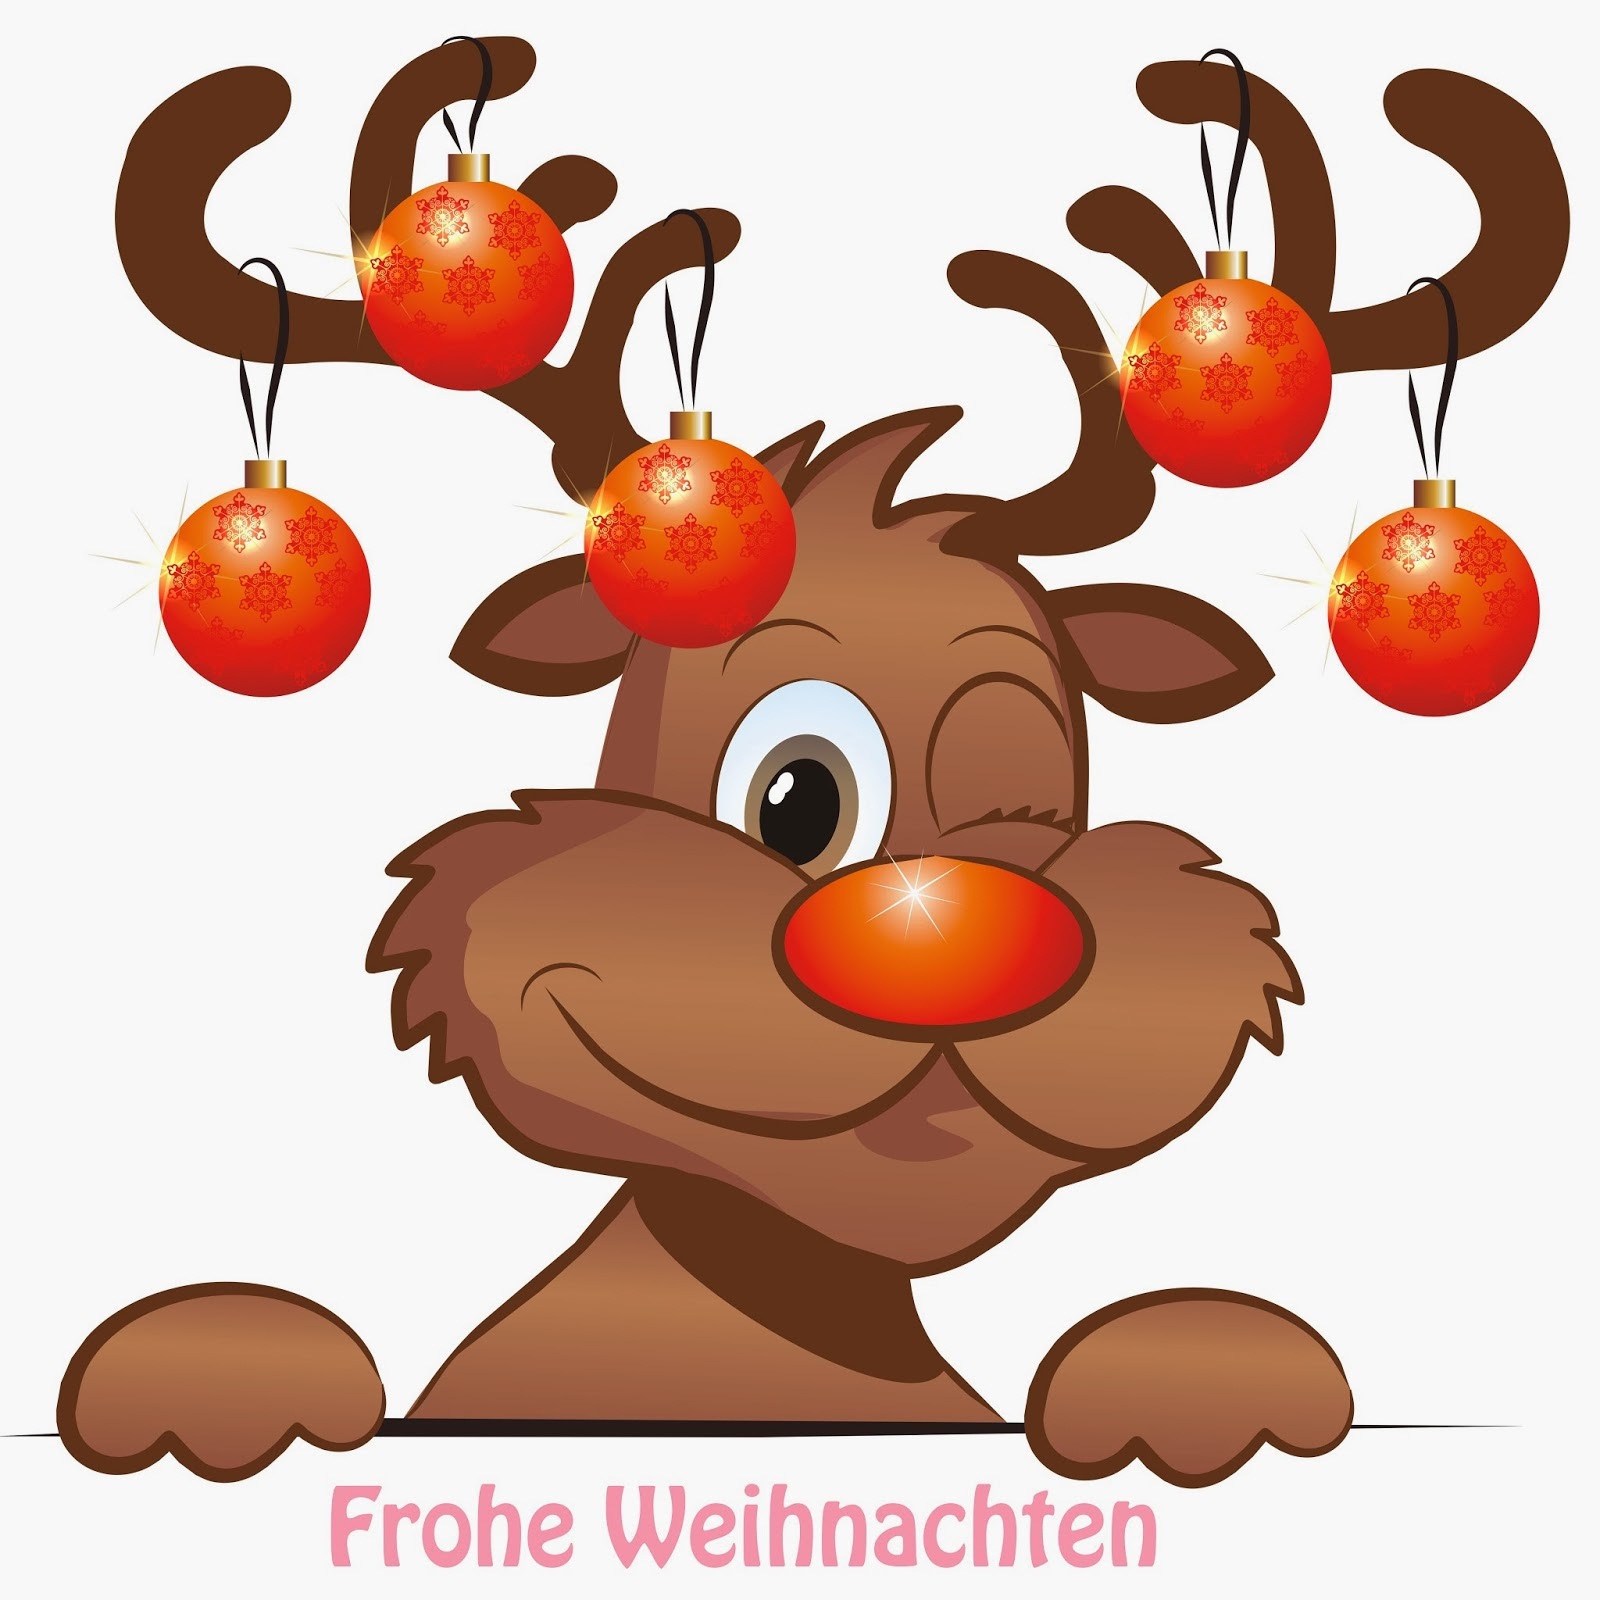 Lustige Weihnachtsbilder Kostenlos Als Hintergrund Frohe Fur Lustige Bilder Weihnachten Kostenlos Schulz Stanztechnik Gmbh